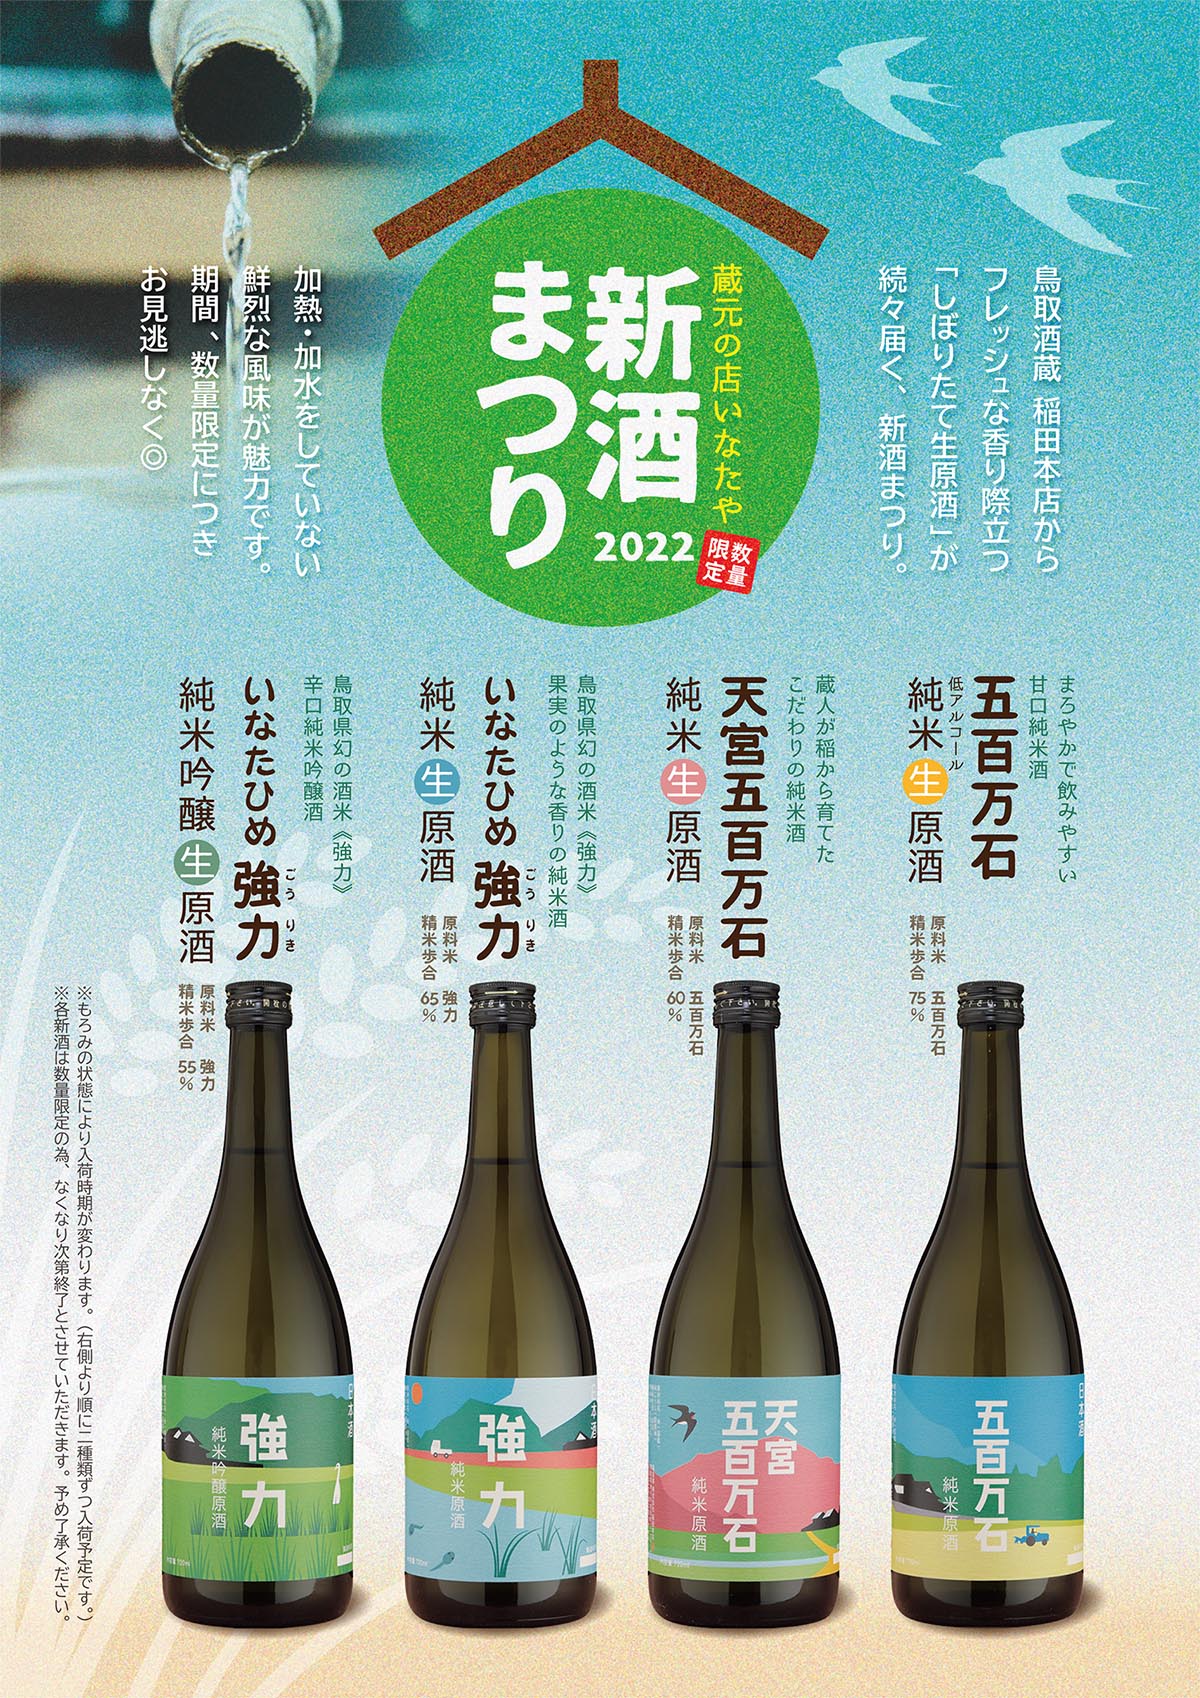 稲田屋の「新酒まつり」ポスターイメージ